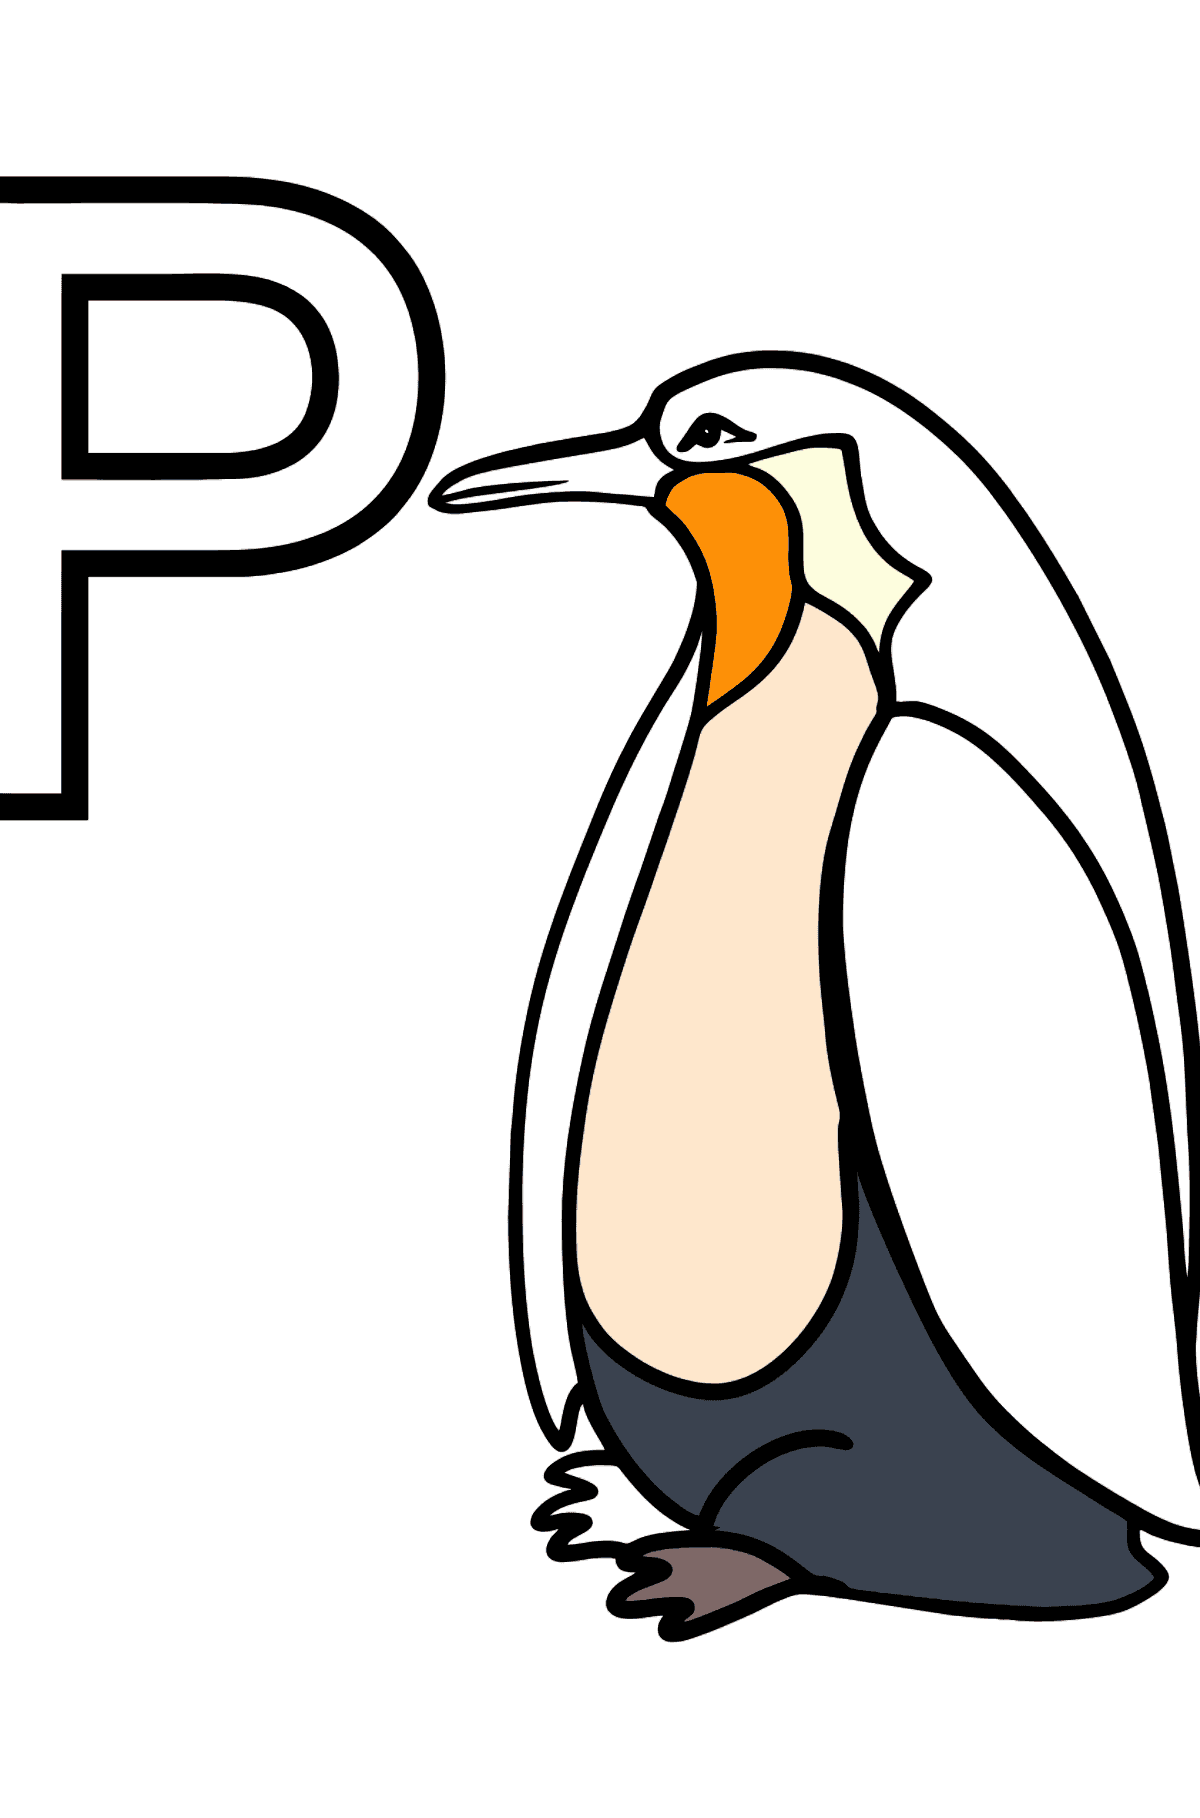 Раскраска Буква P Английский алфавит - PENGUIN - Картинки для Детей